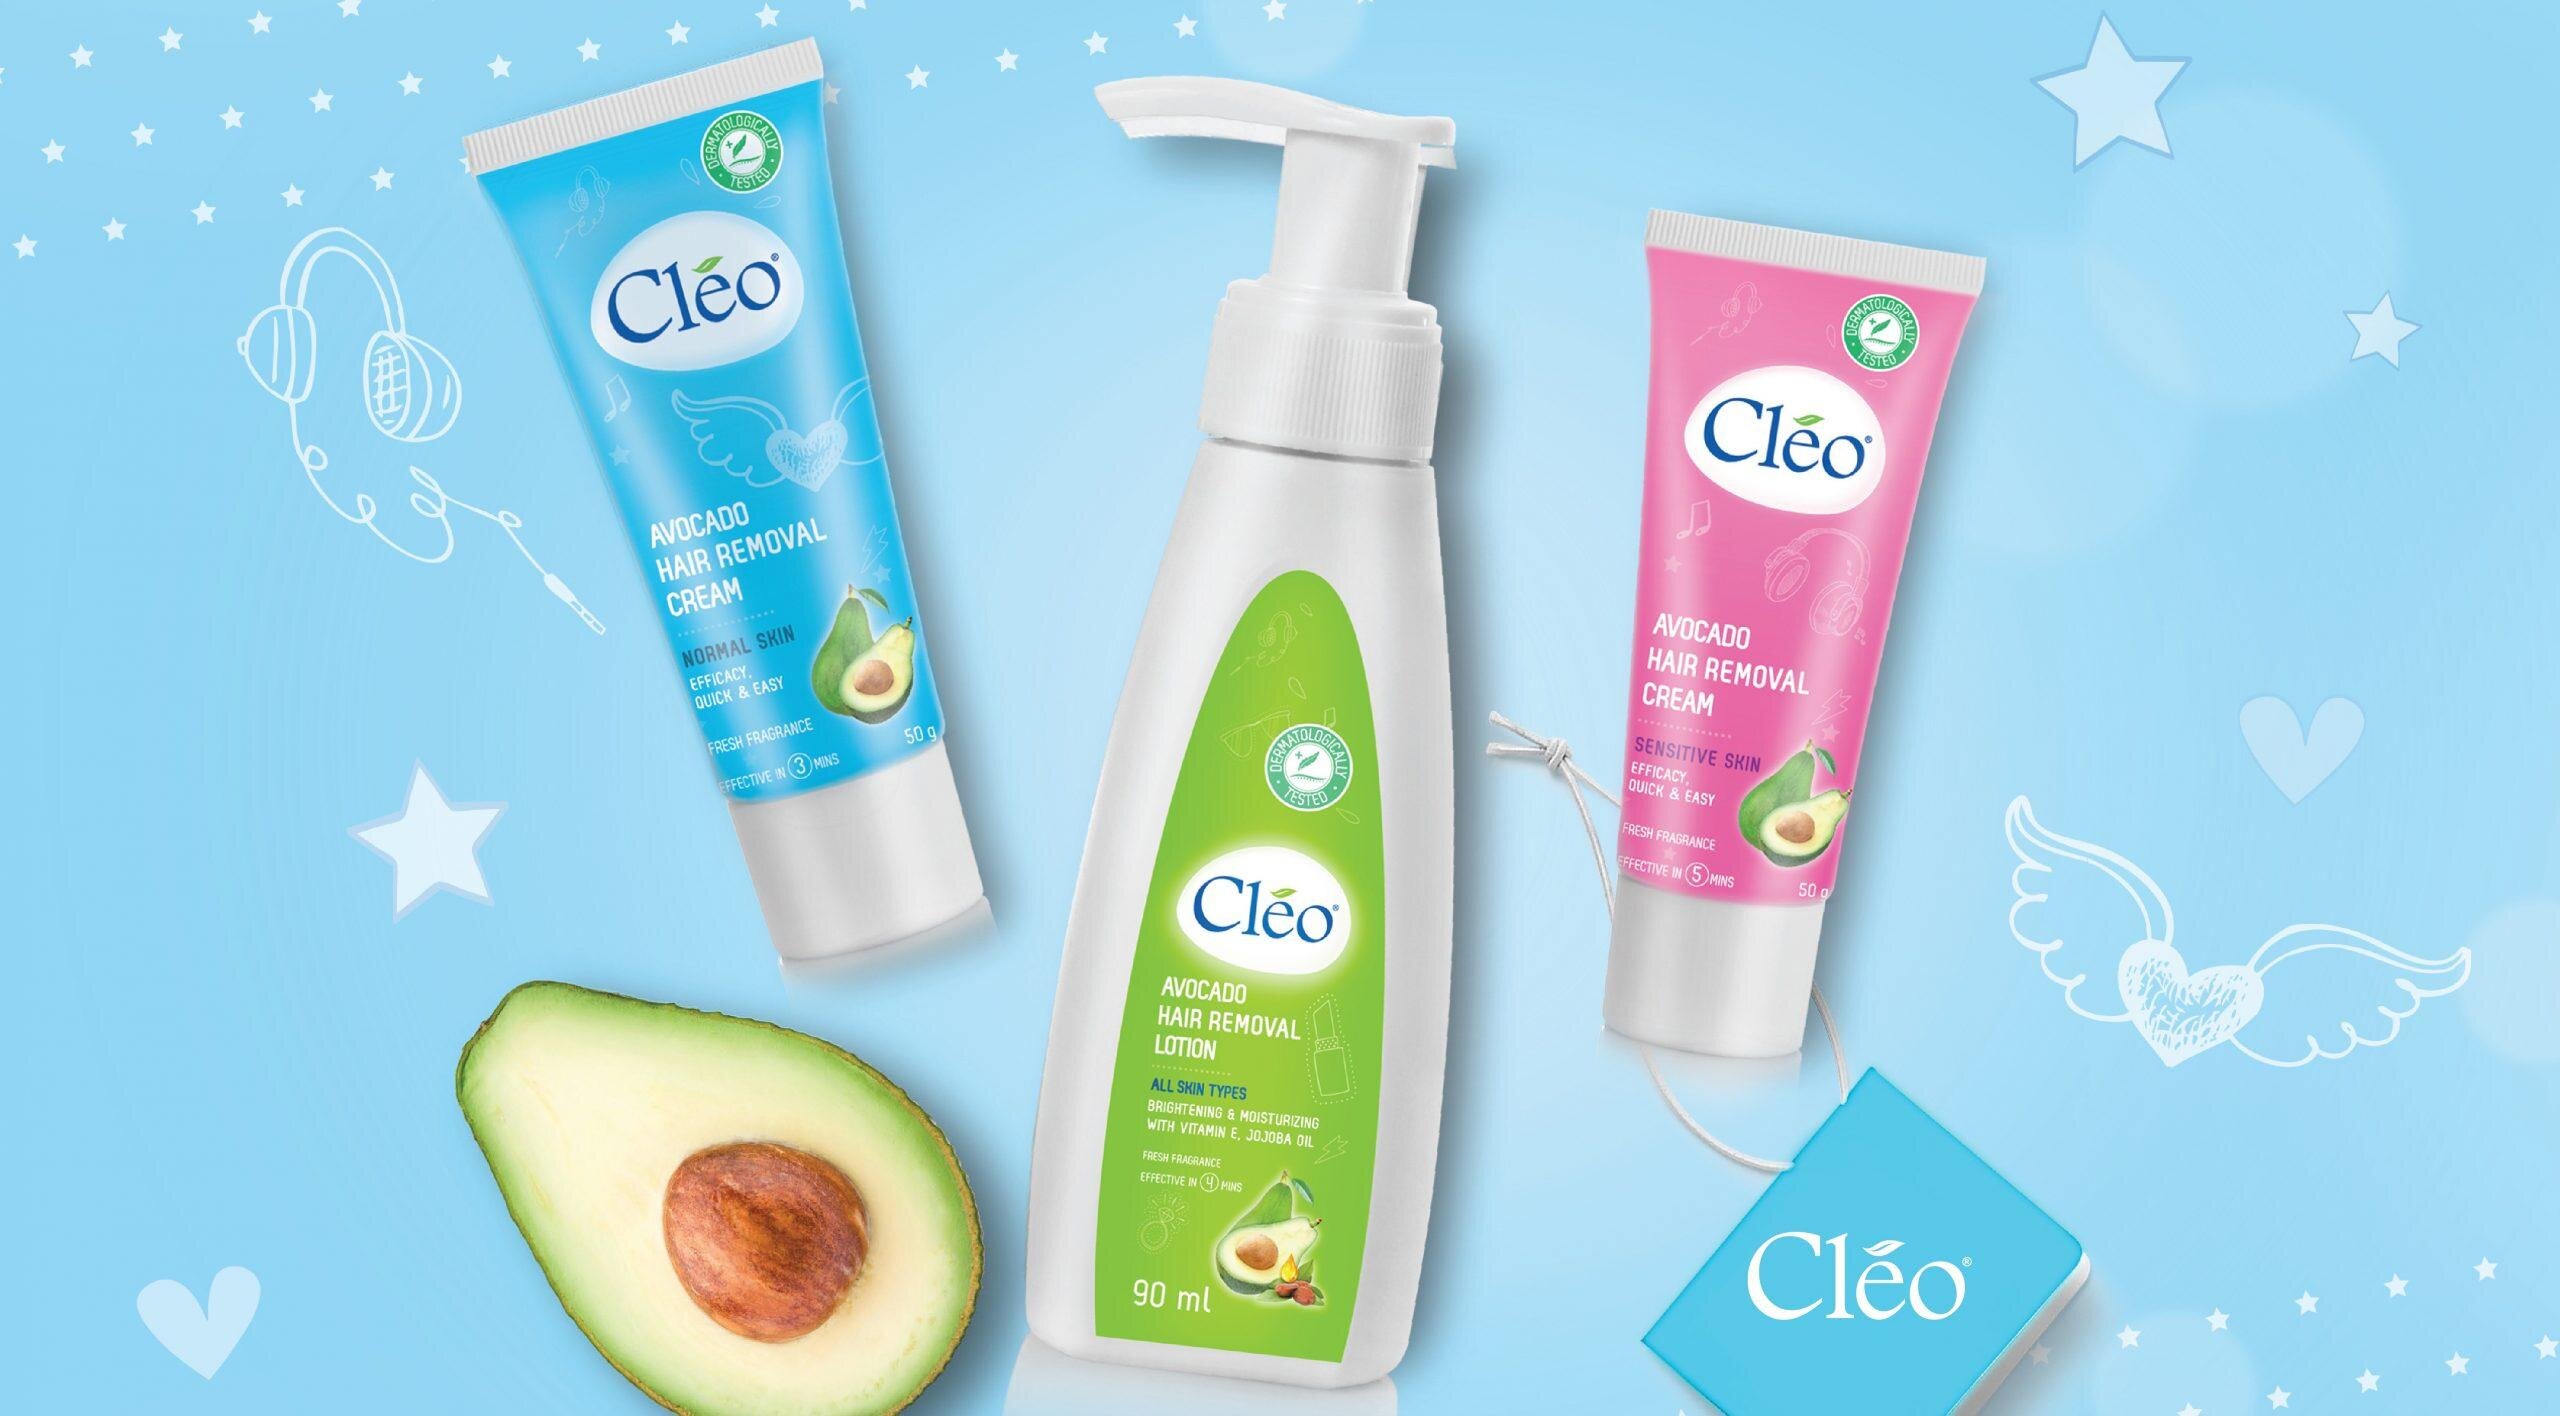 Kem tẩy lông vùng kín: Cleo